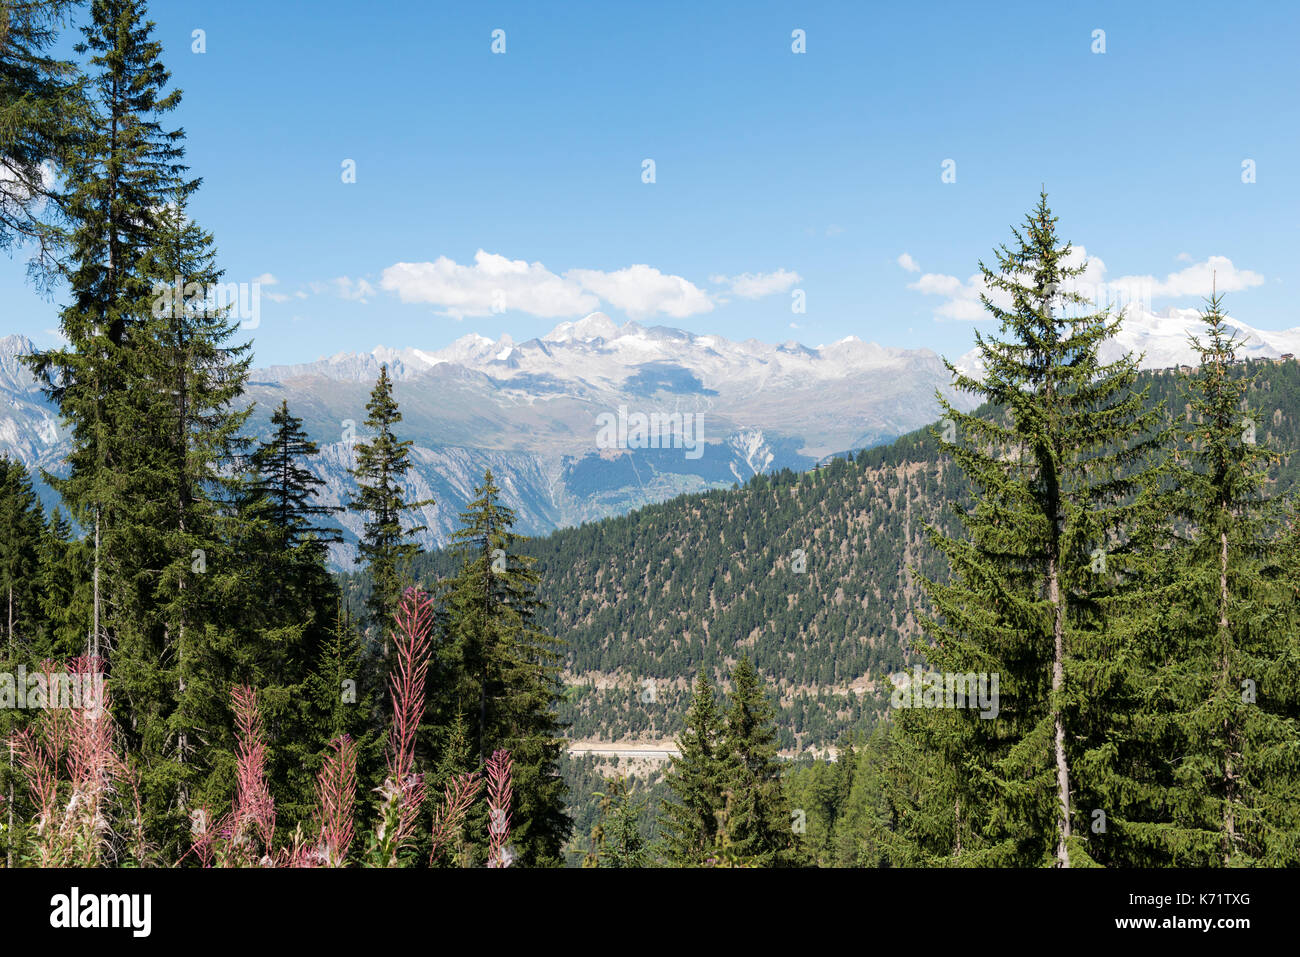 Vista desde simplon pass road, vegetación alpina, Valais, Suiza Foto de stock